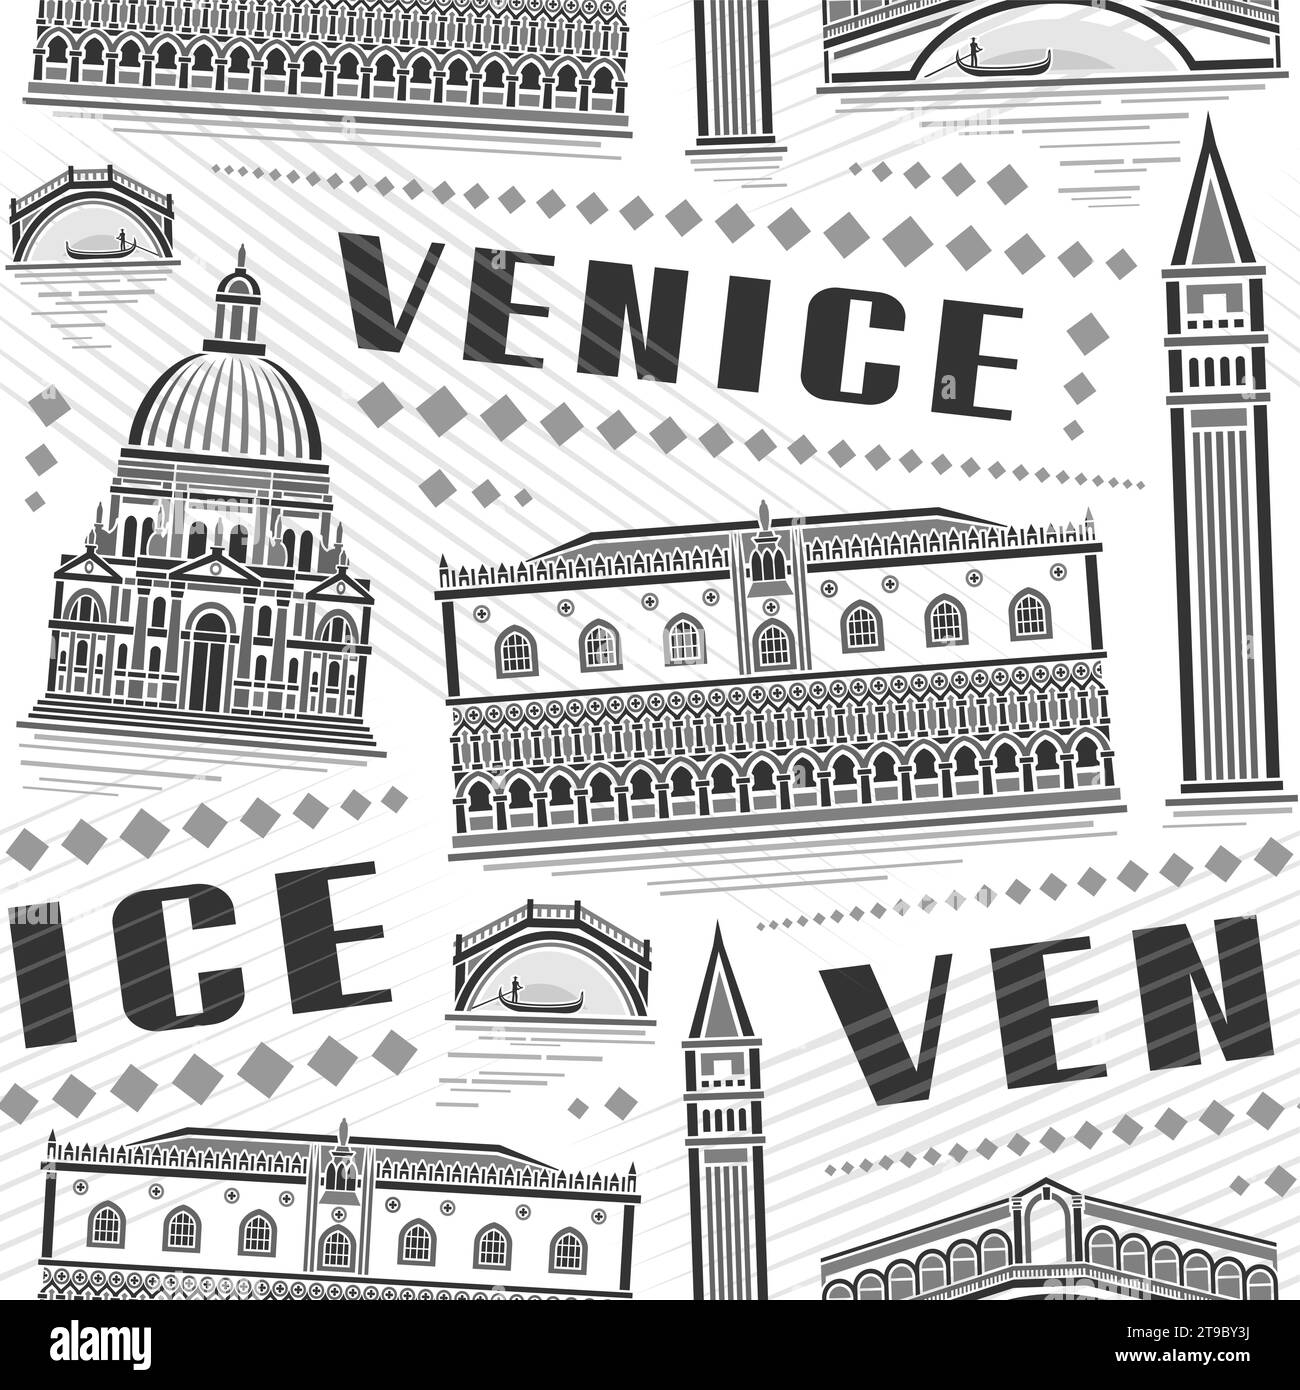 Vector Venice Seamless Pattern, fond carré répétitif avec illustration du célèbre paysage de la ville européenne de venise sur fond blanc, monochrome gris Illustration de Vecteur